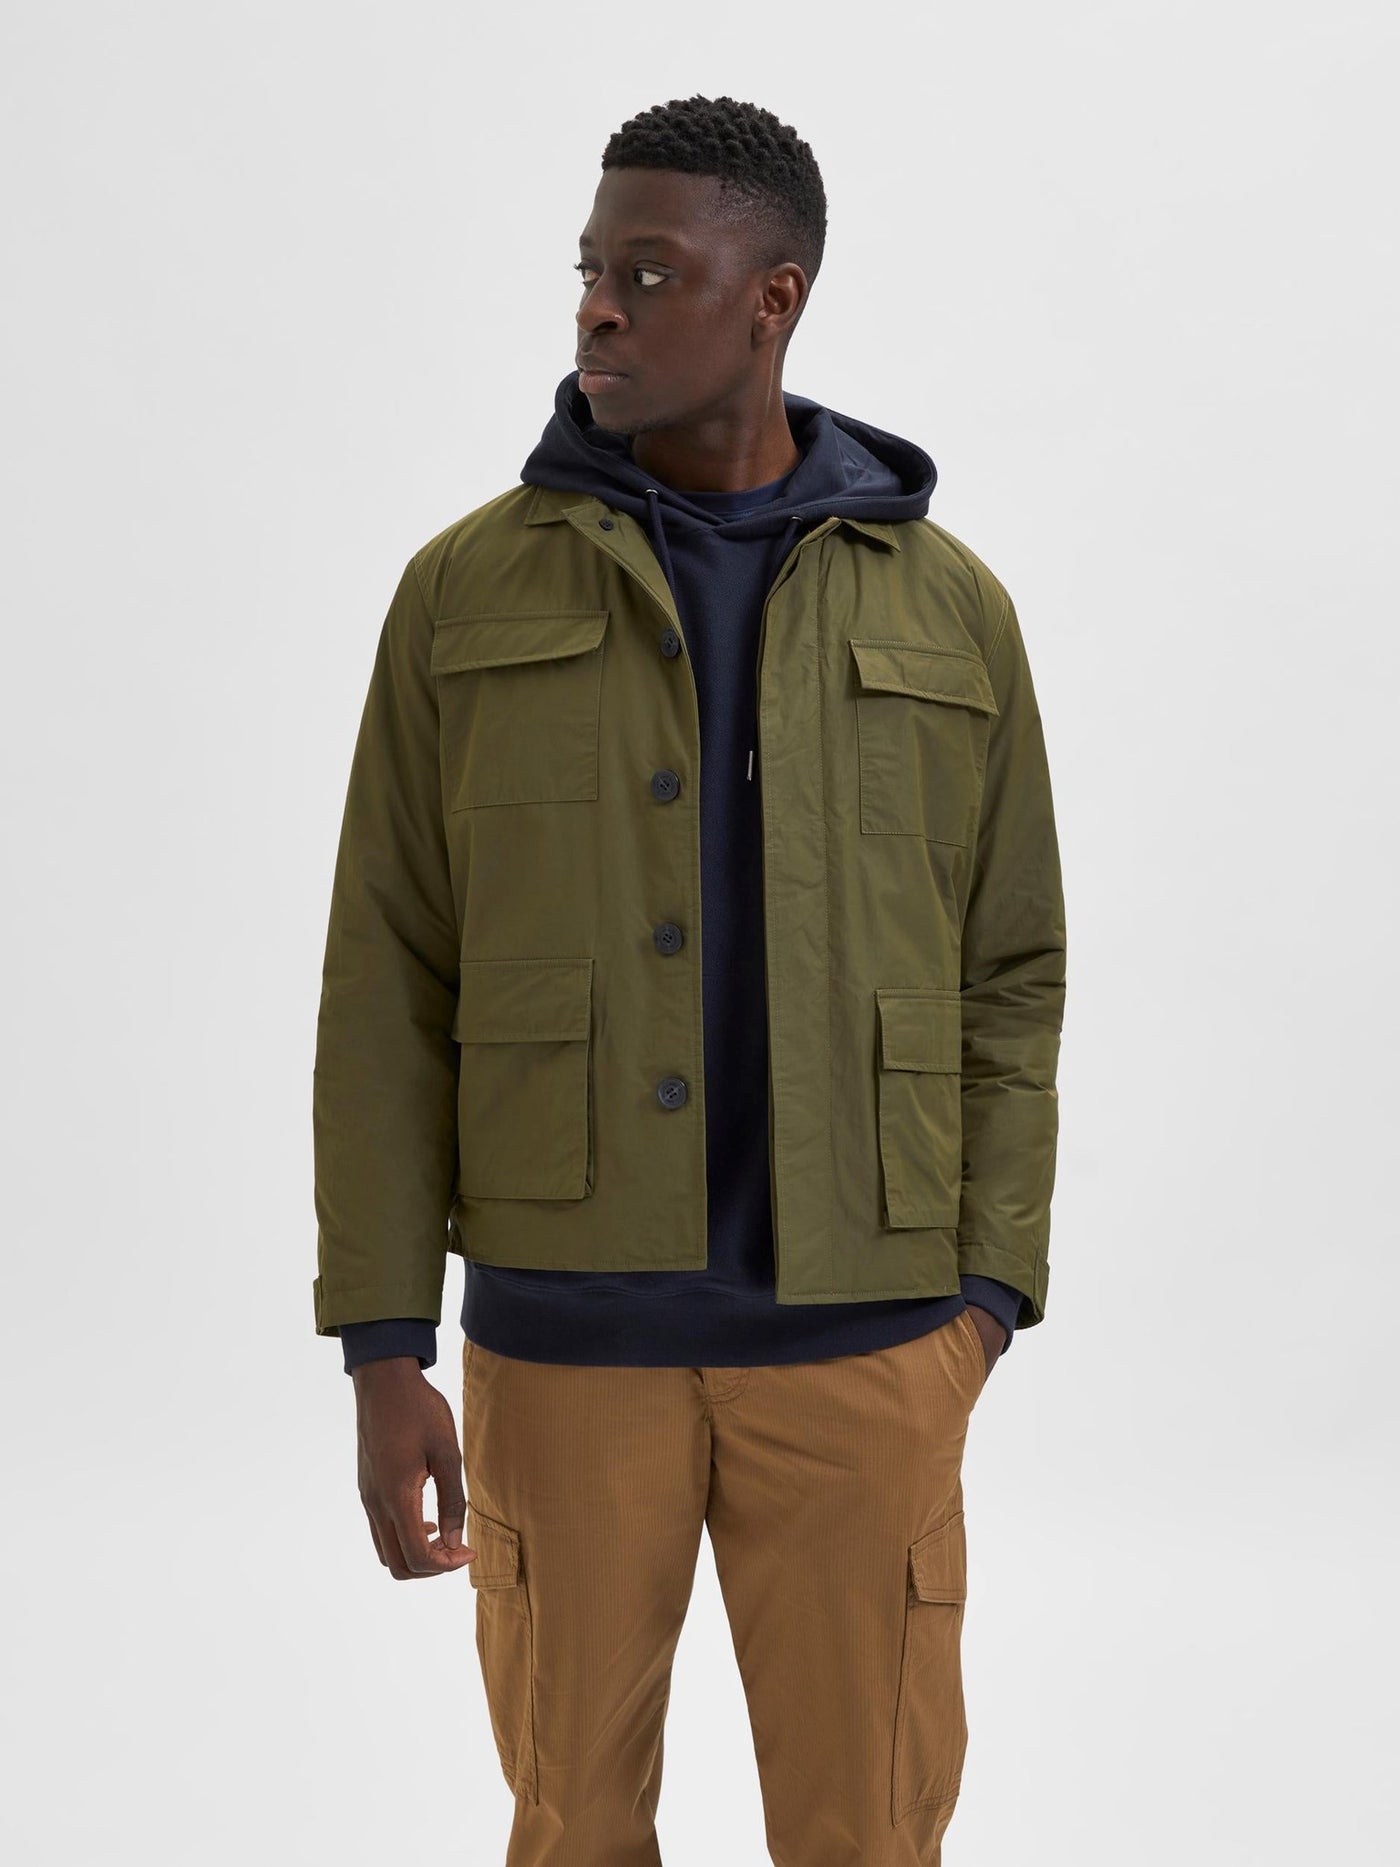 Regen Field Jacket - Winter Moss - Selected Homme - Green